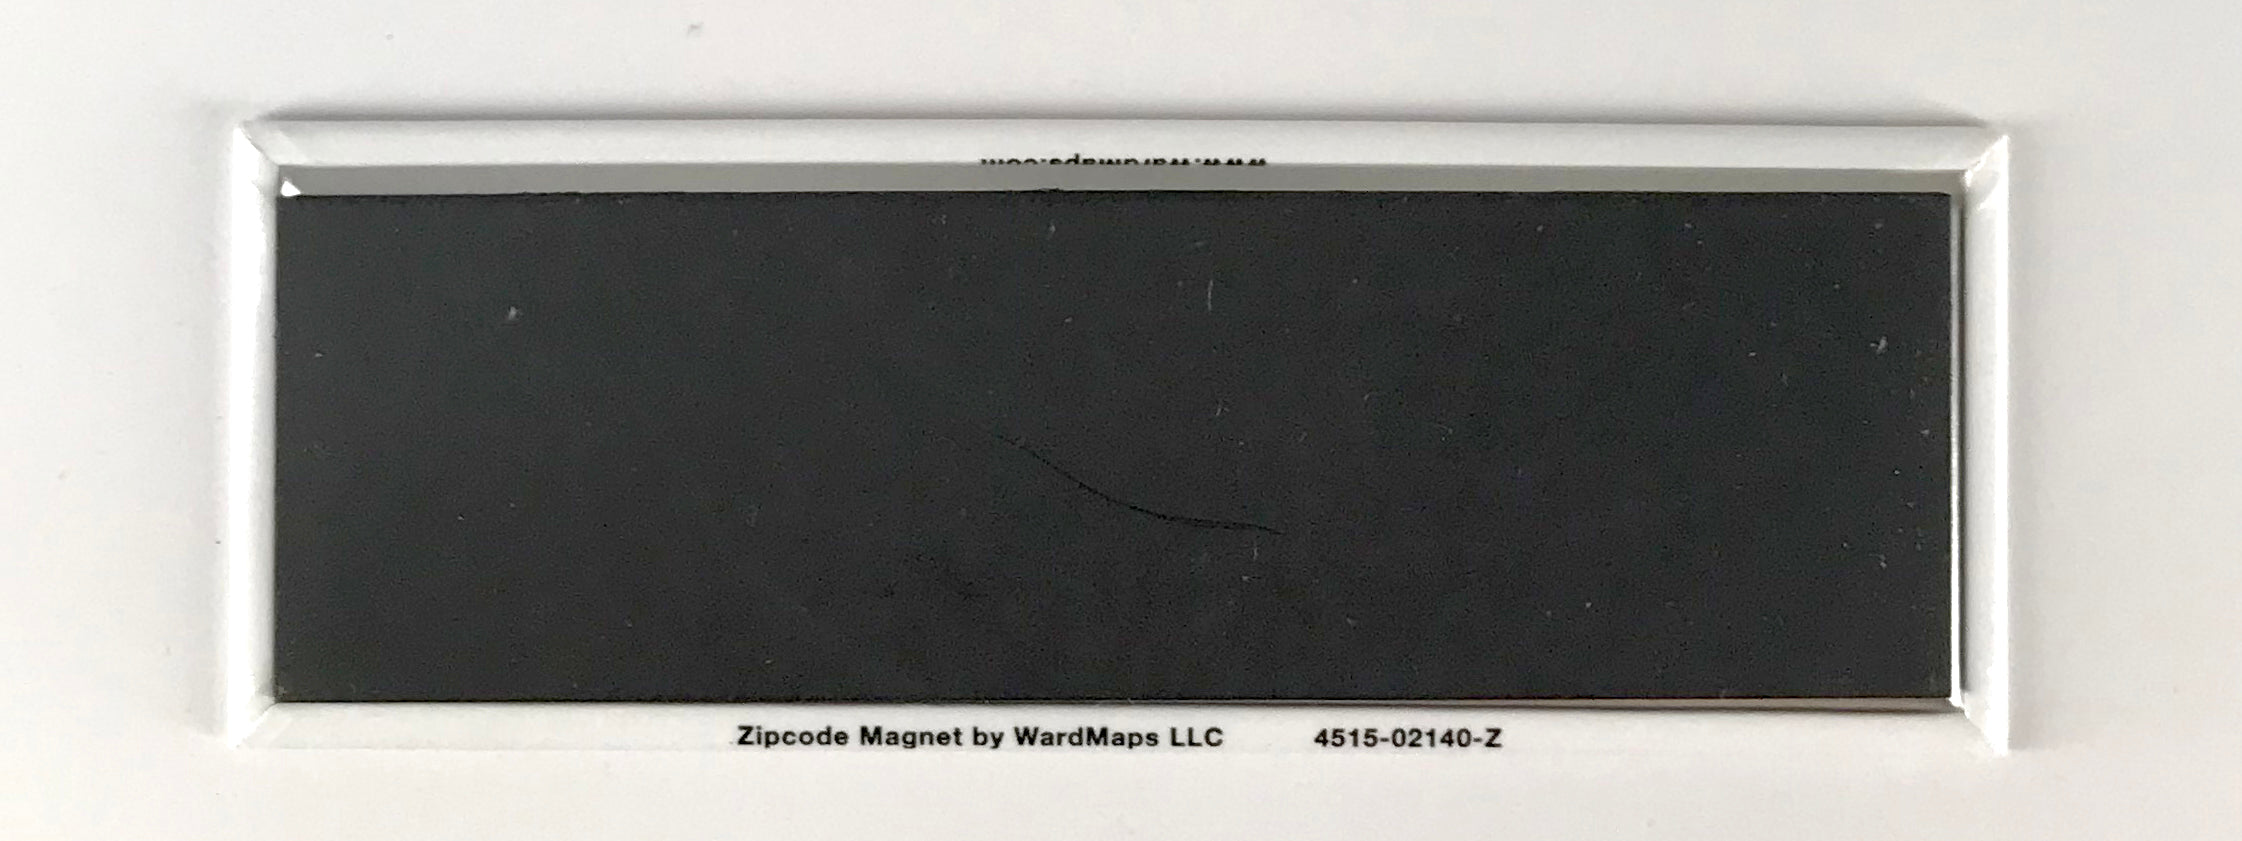 02138 (Cambridge, Massachusetts) ZIP Code Magnet